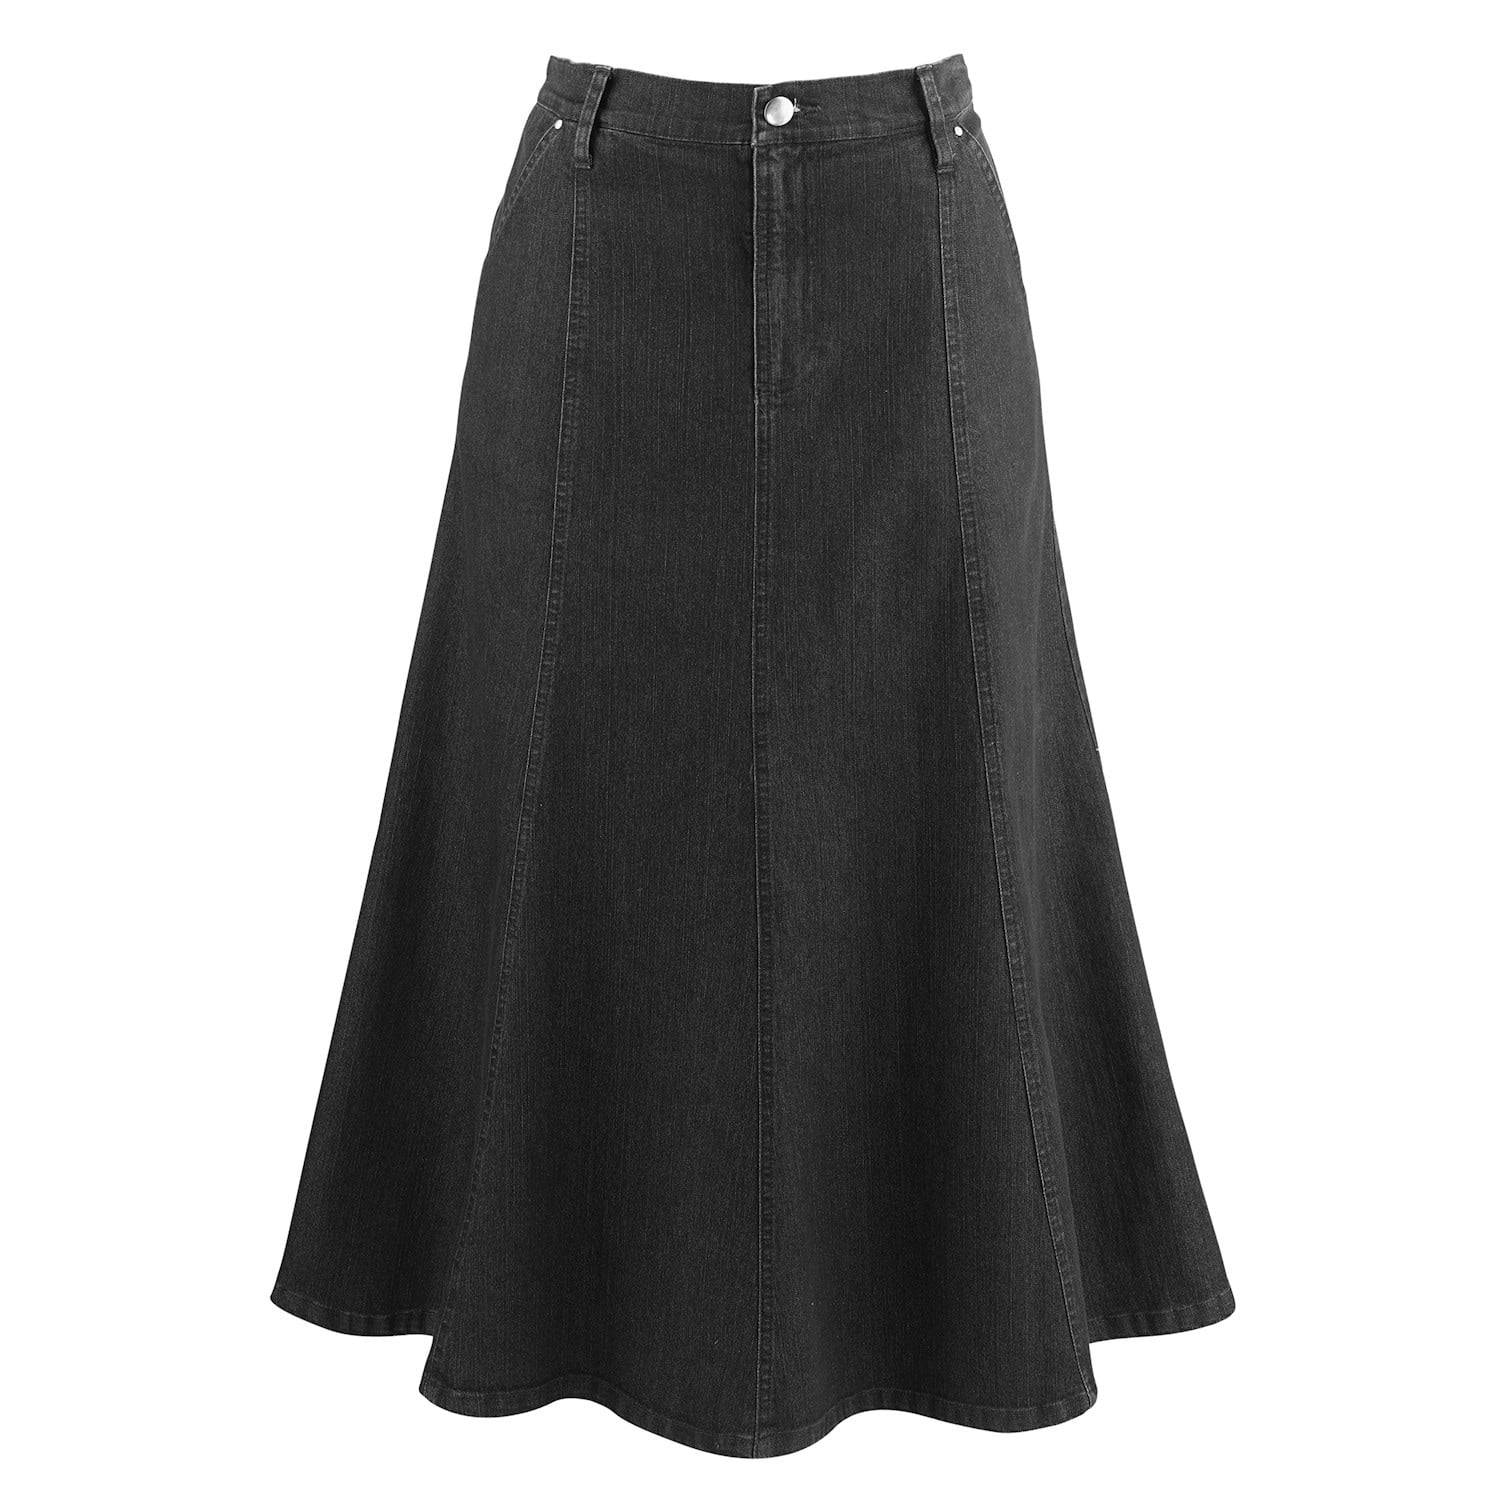 CATALOG CLASSICS Womens Long Denim Skirt Blue Jean Skirts for Women Midi  Skirt - Black, 10